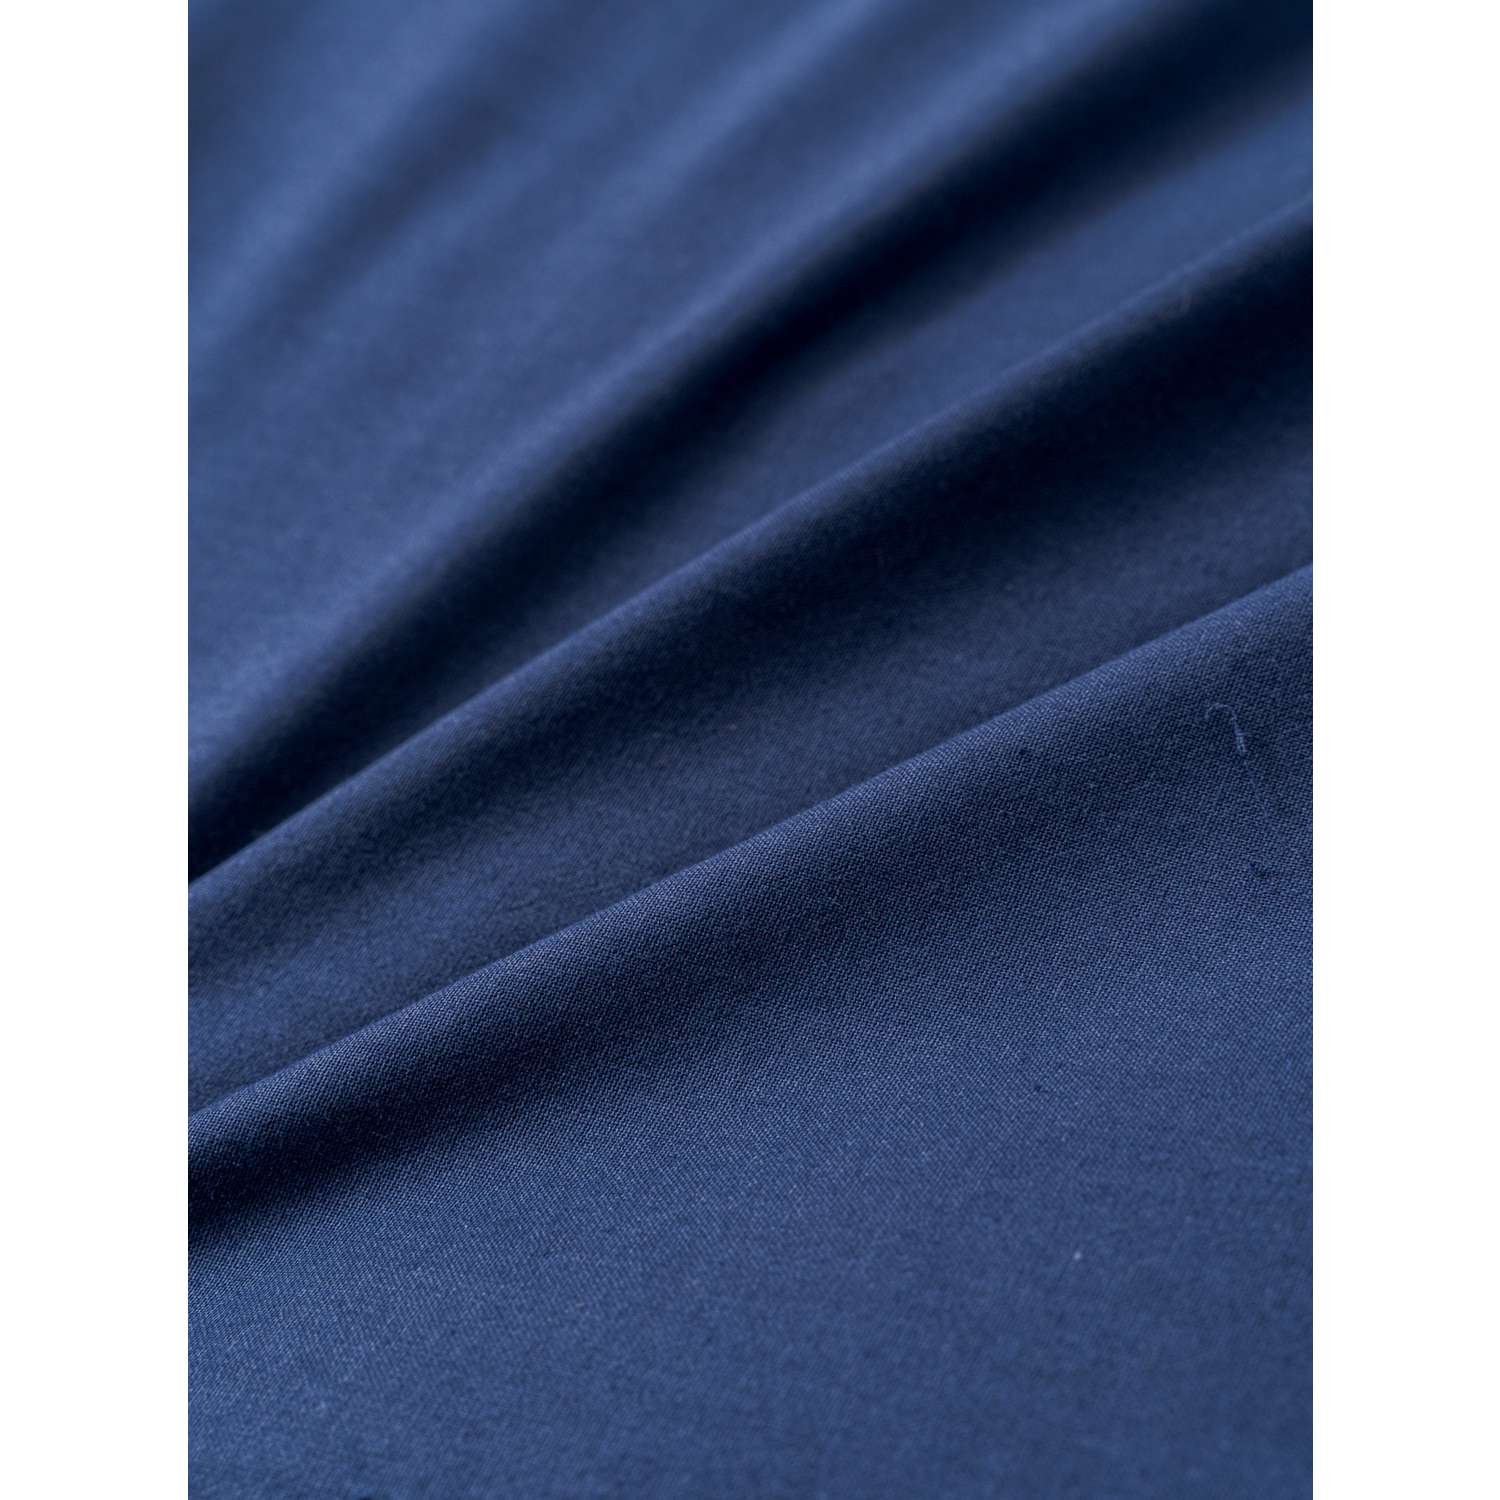 Комплект постельного белья IDEASON Поплин 3 предмета 2.0 спальный темно-синий - фото 8